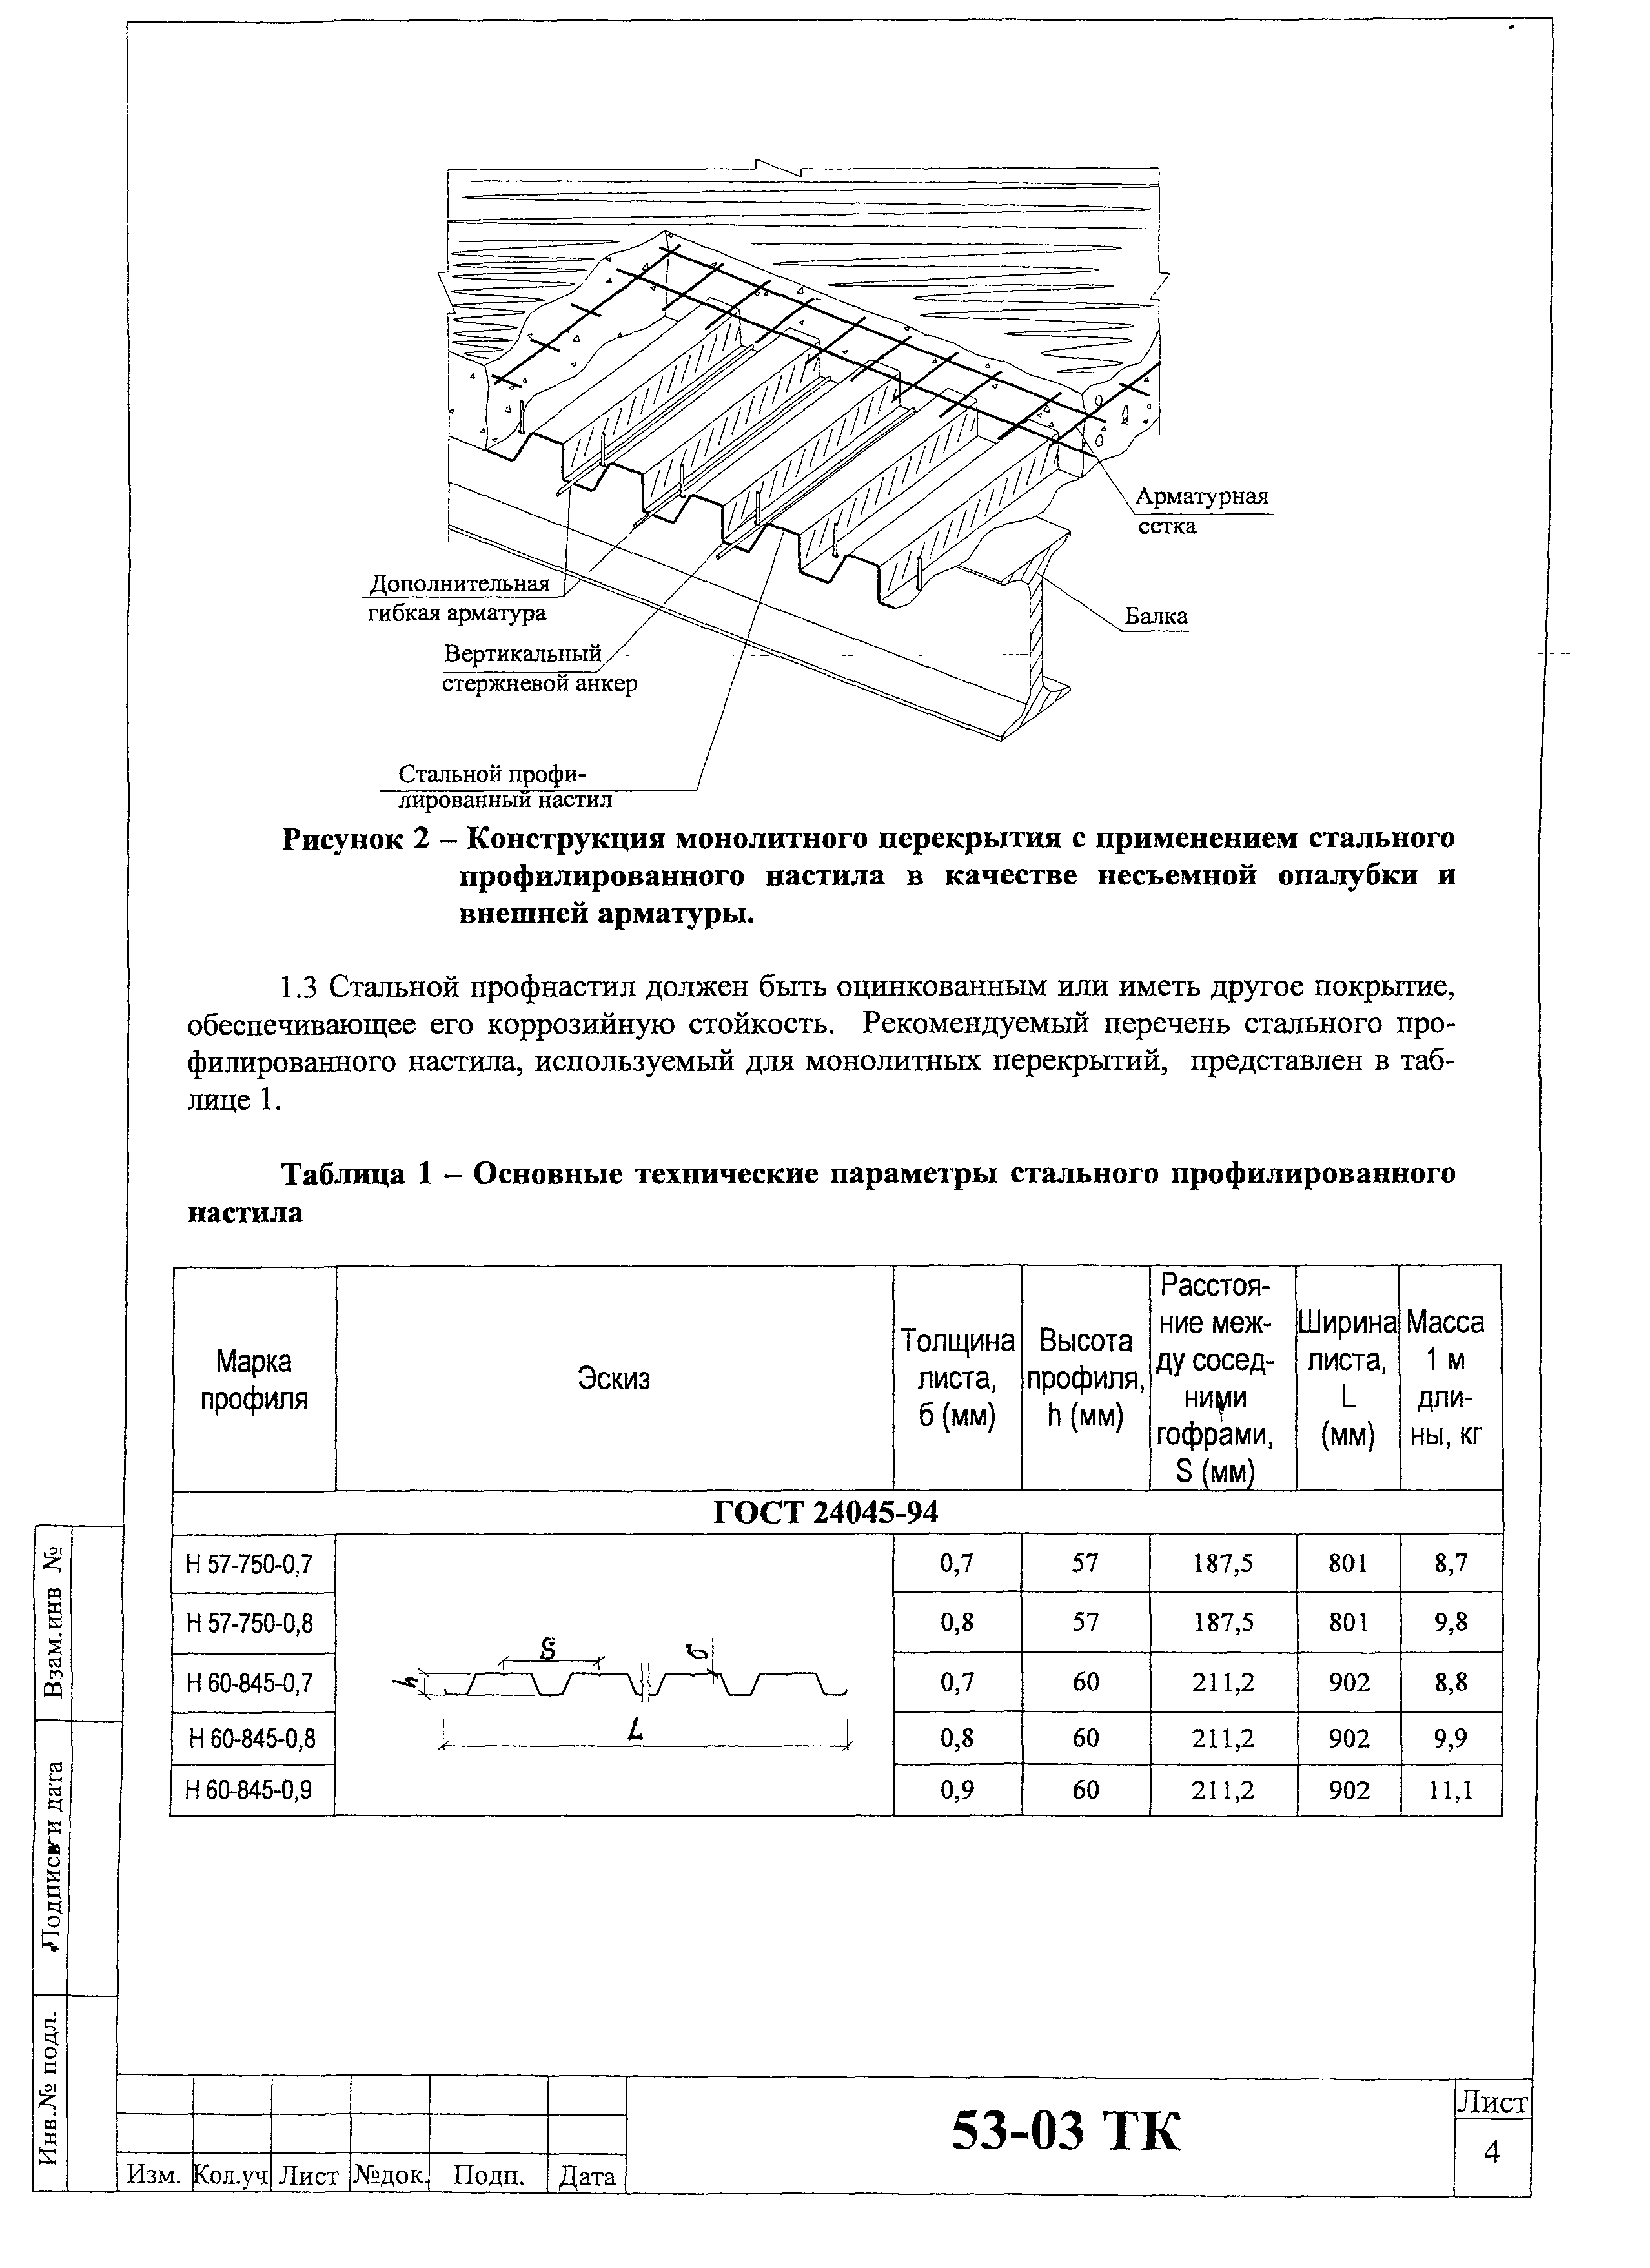 Технологическая карта 53-03 ТК